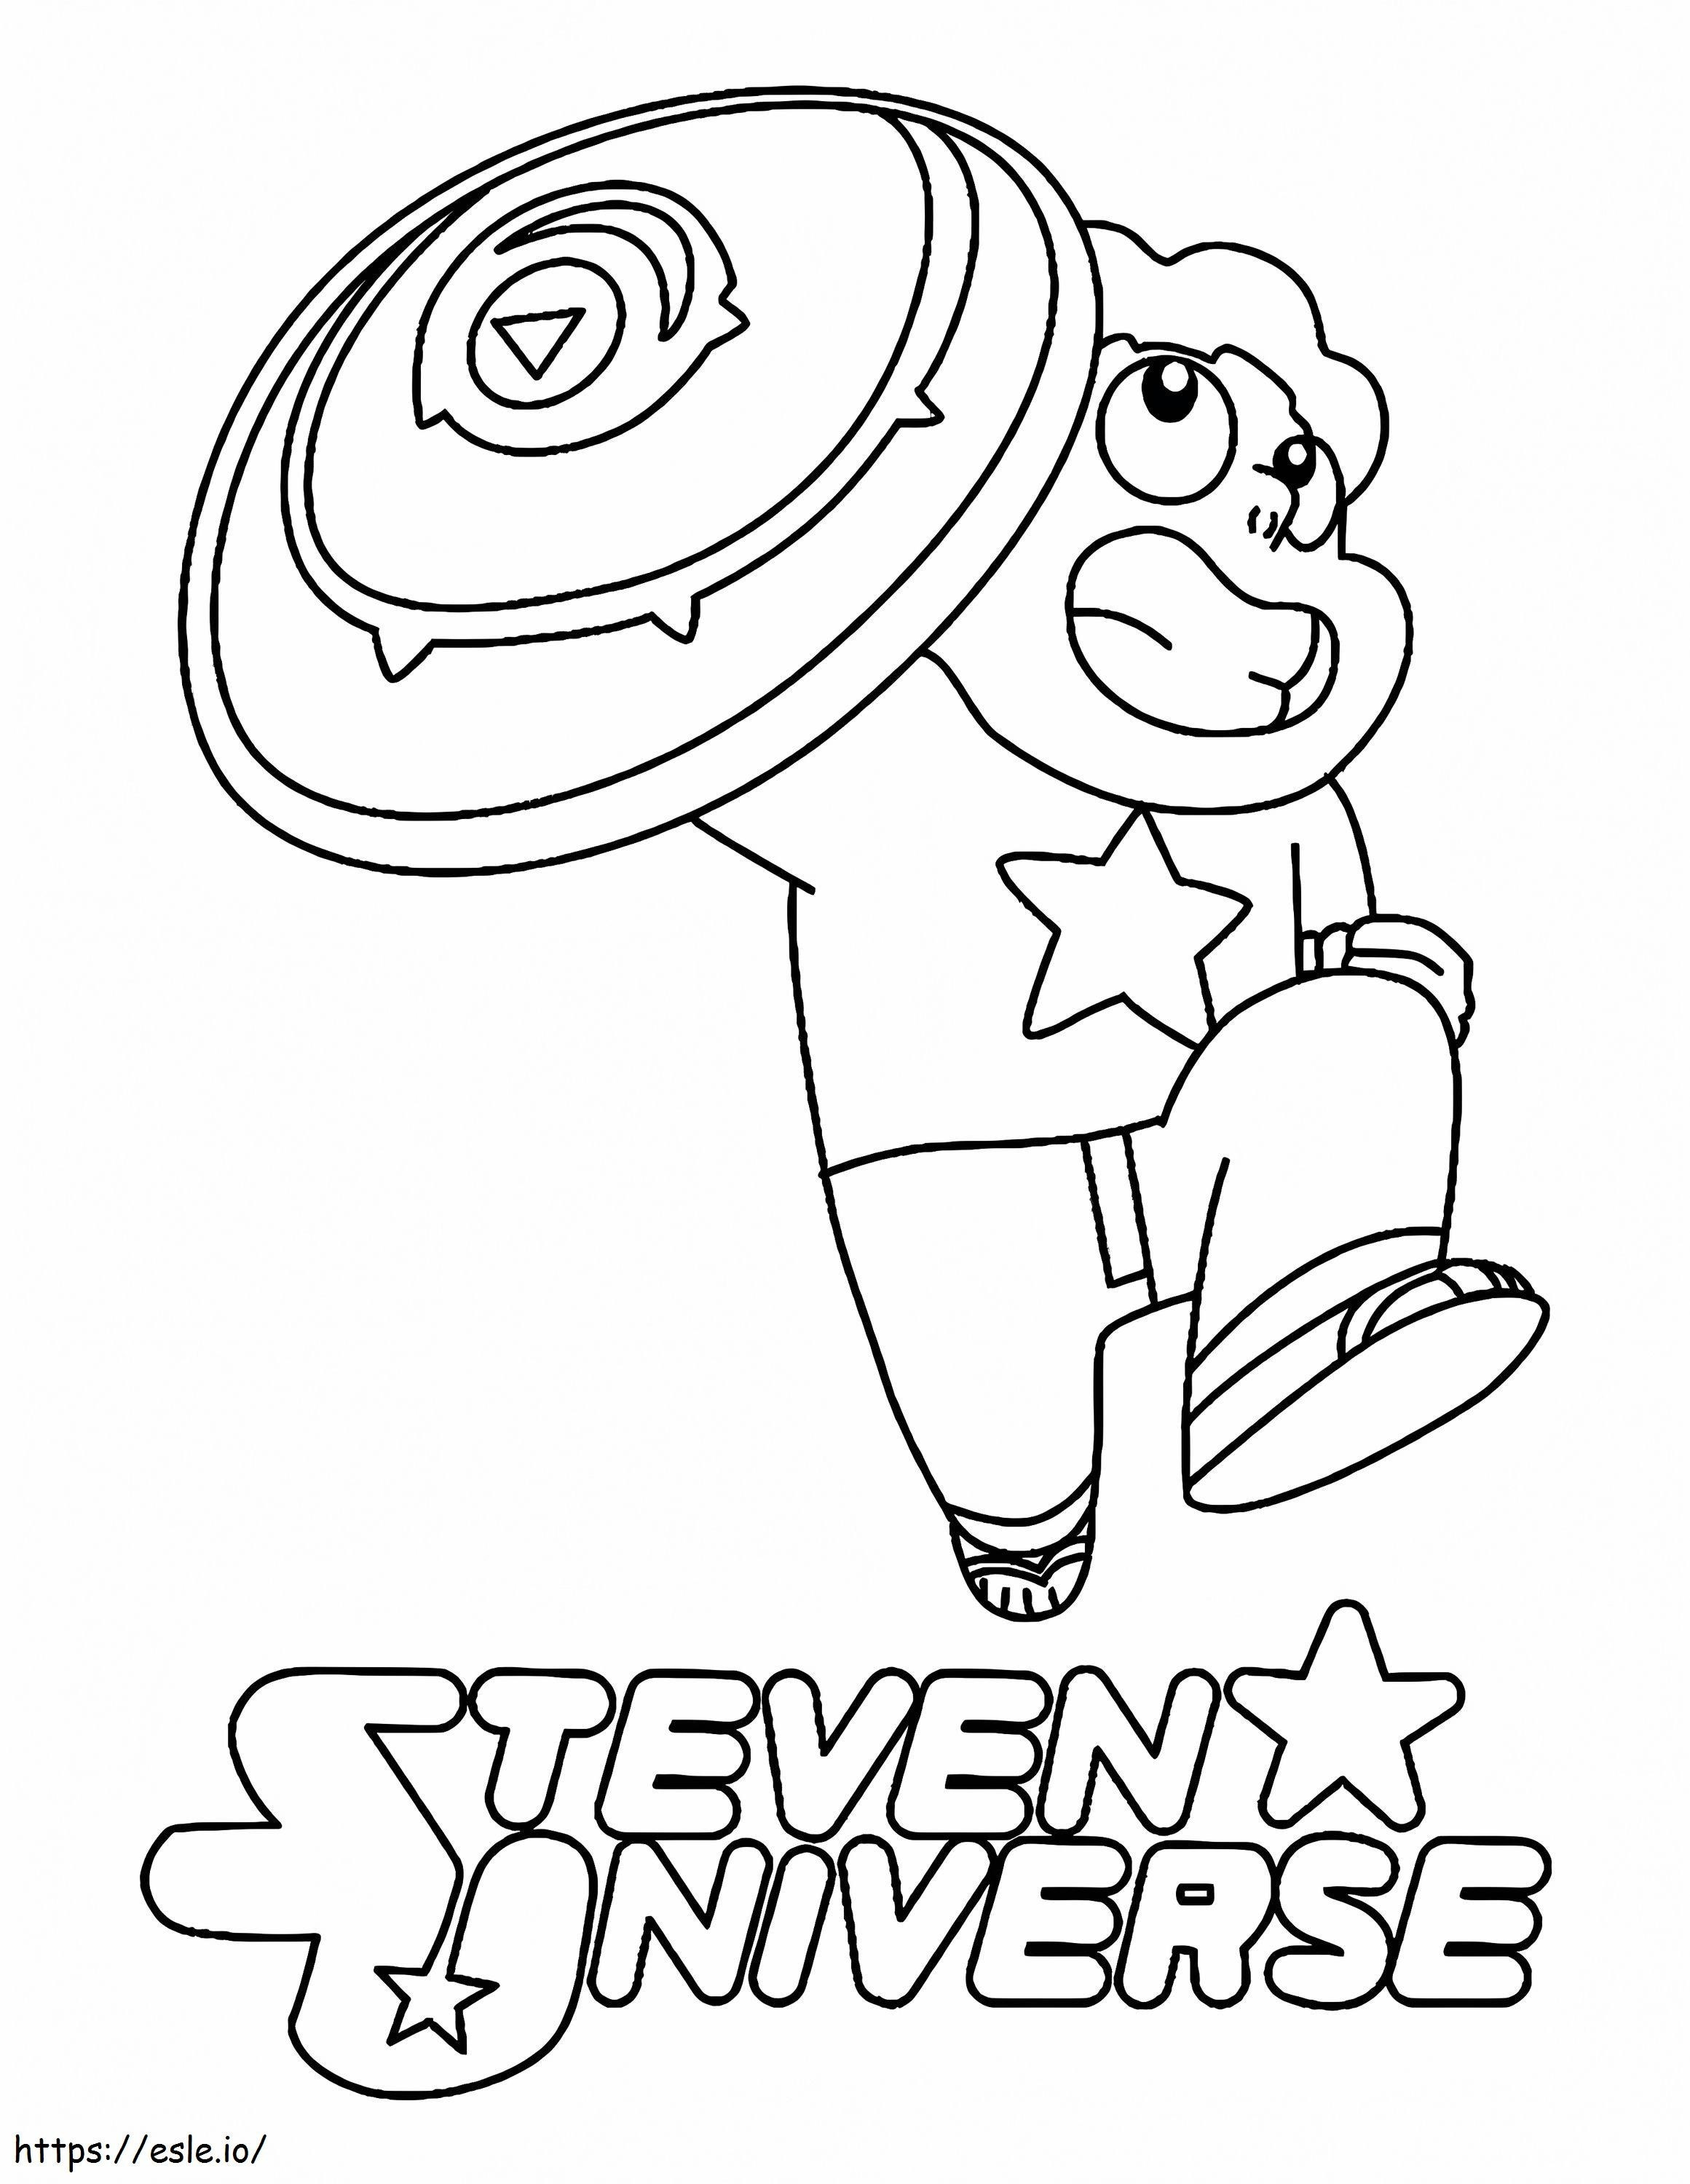 1579058587 Steven Universe Kolorowanka do wydrukowania Granat Aktor głosowy Przestrzeń kosmiczna Planety Spinel kolorowanka